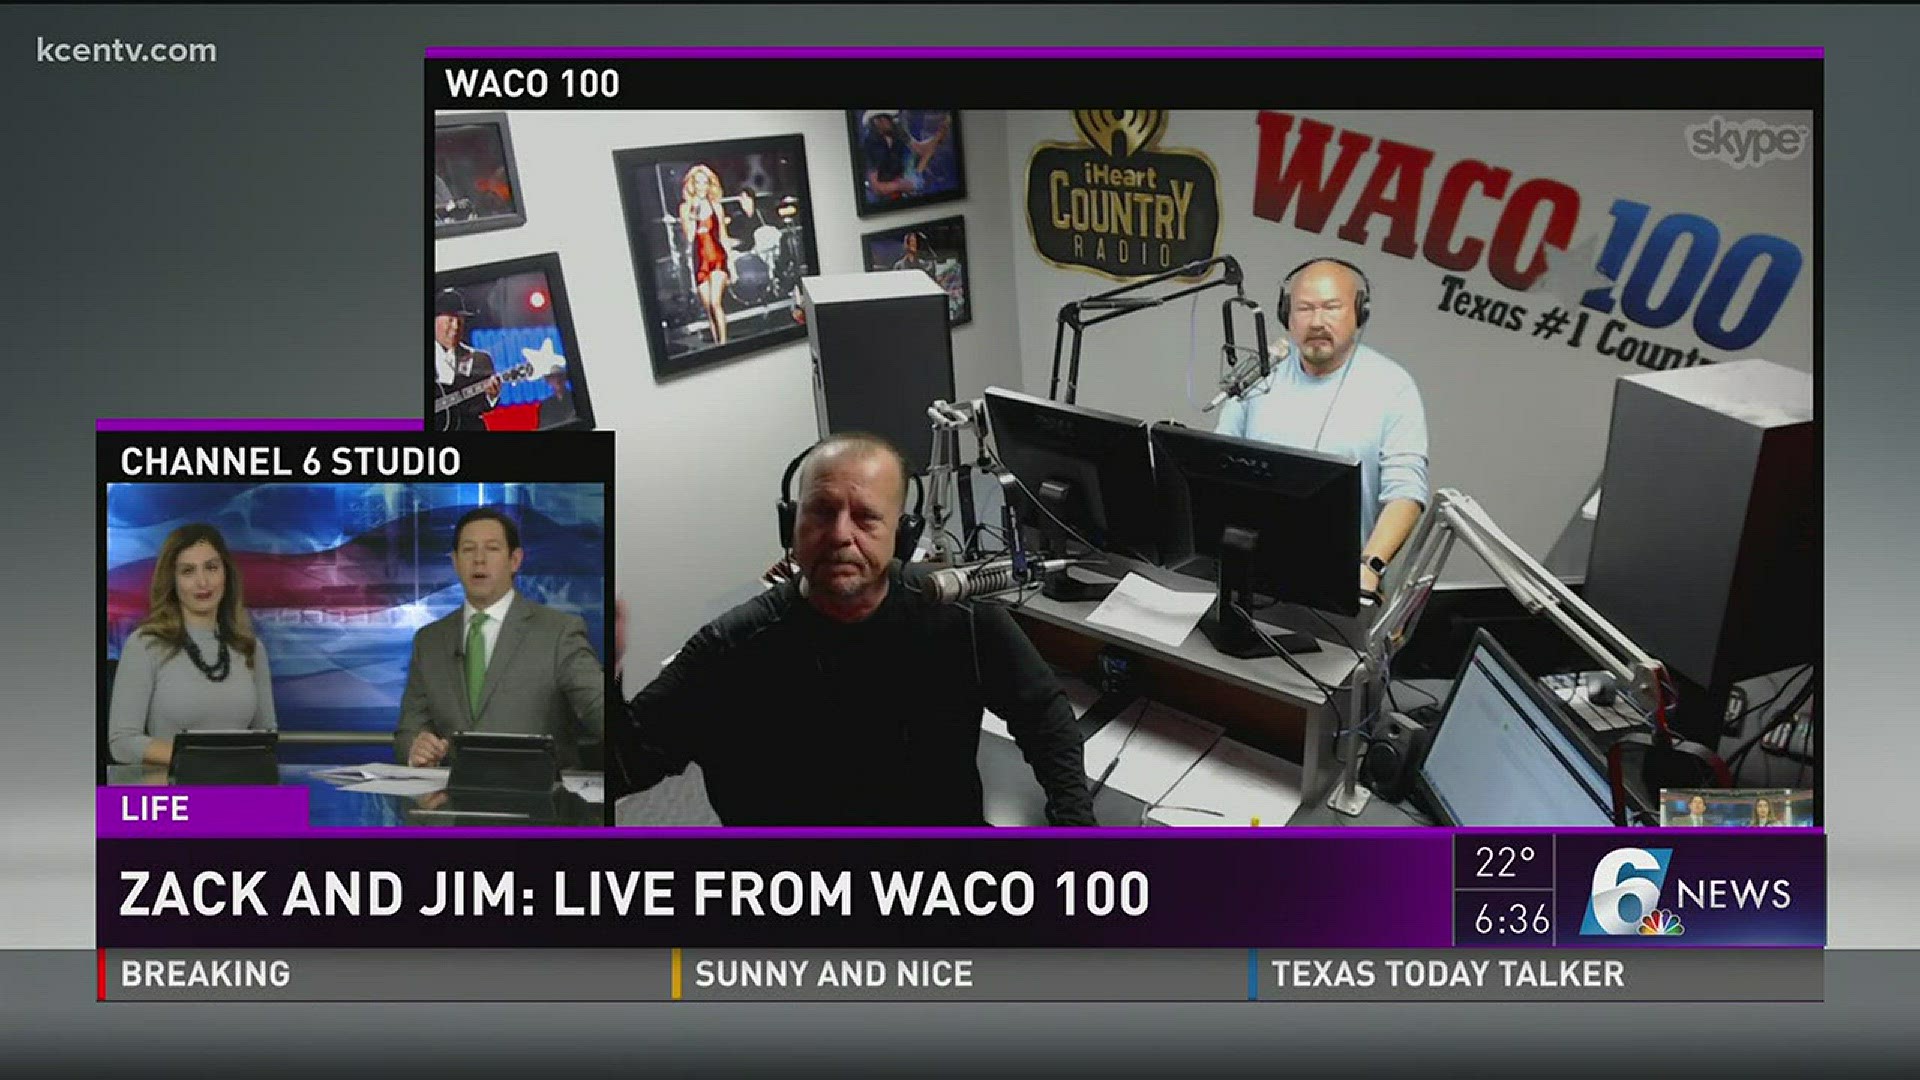 Live on Waco 100.